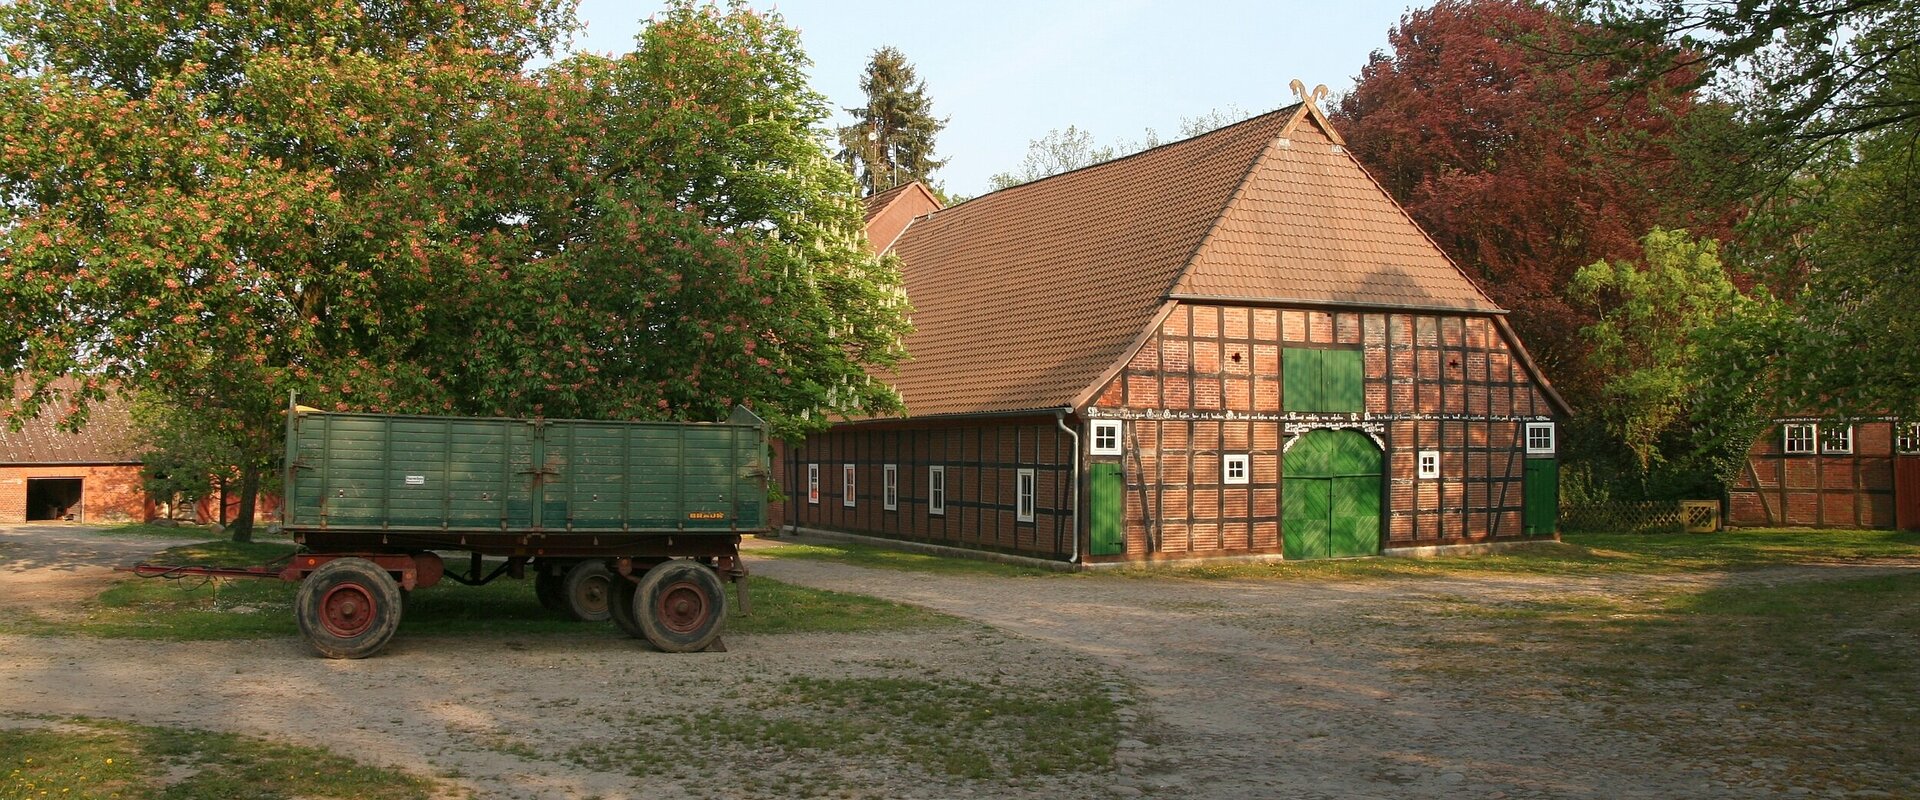 Hofanlage / Bauernhof in Wessenstedt mit großem Hallenhaus in Fachwerk-Bauweise und schräg davor parkendem Gummiwagen (Anhänger)